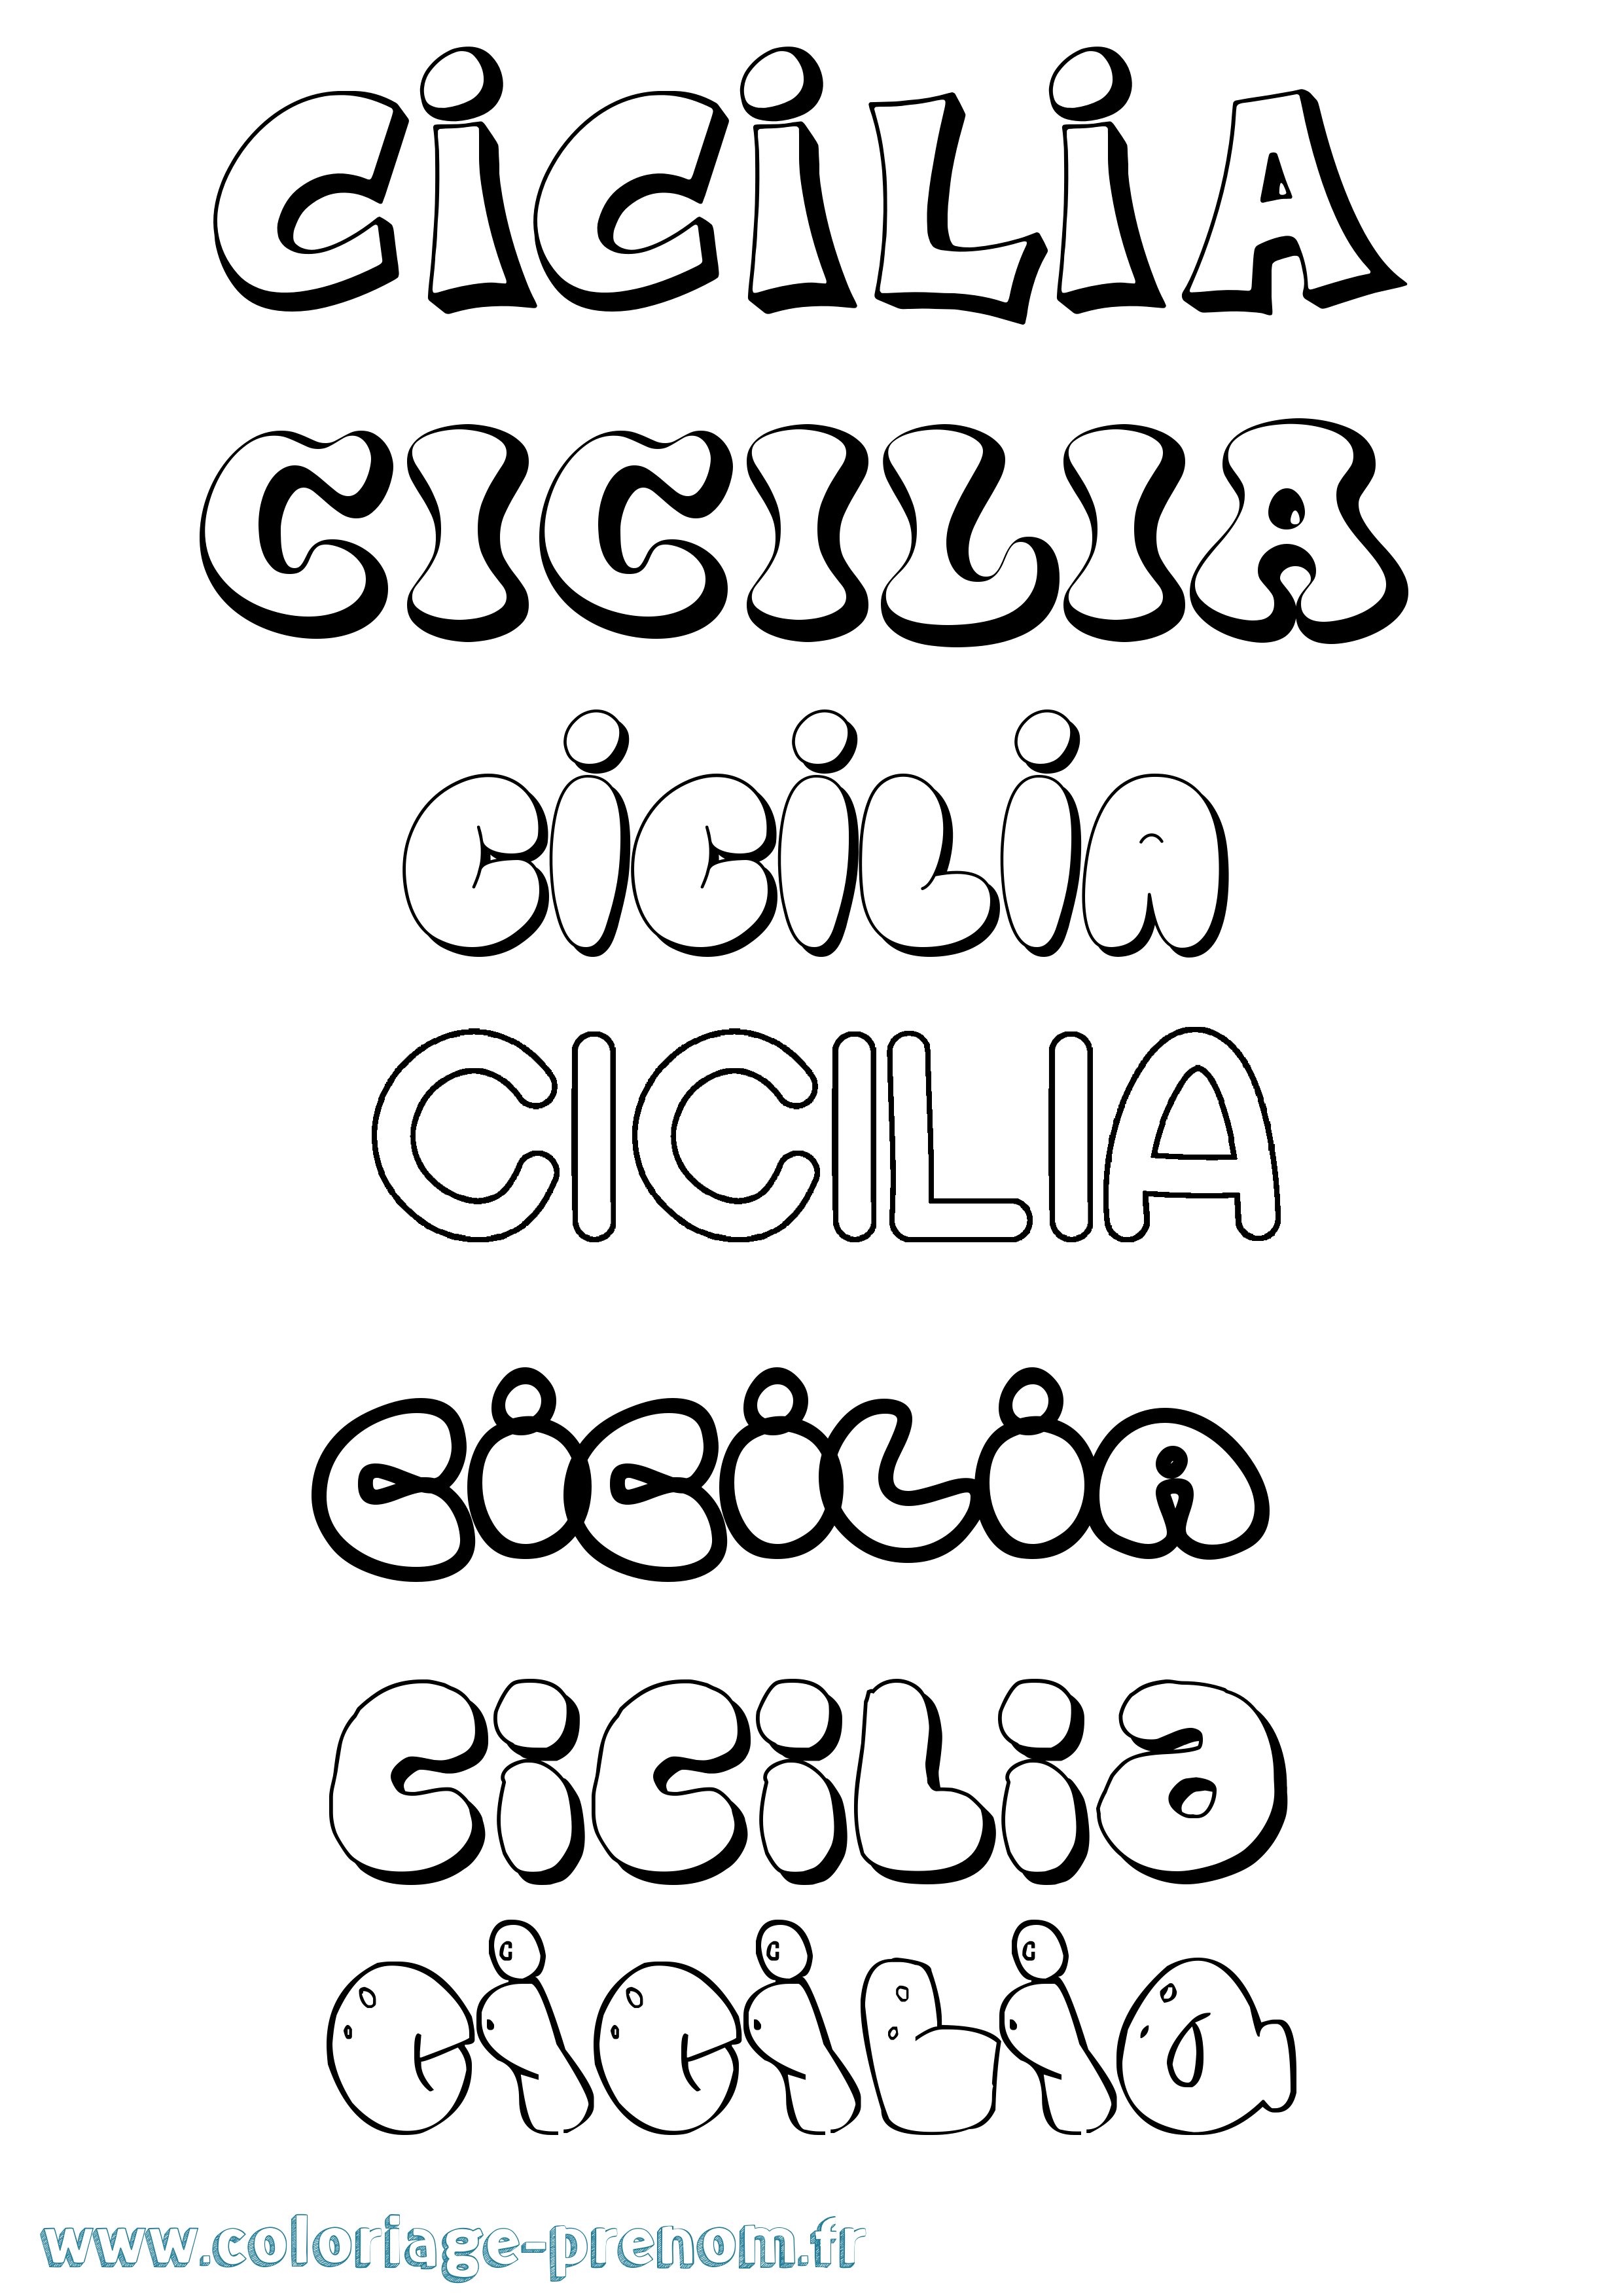 Coloriage prénom Cicilia Bubble